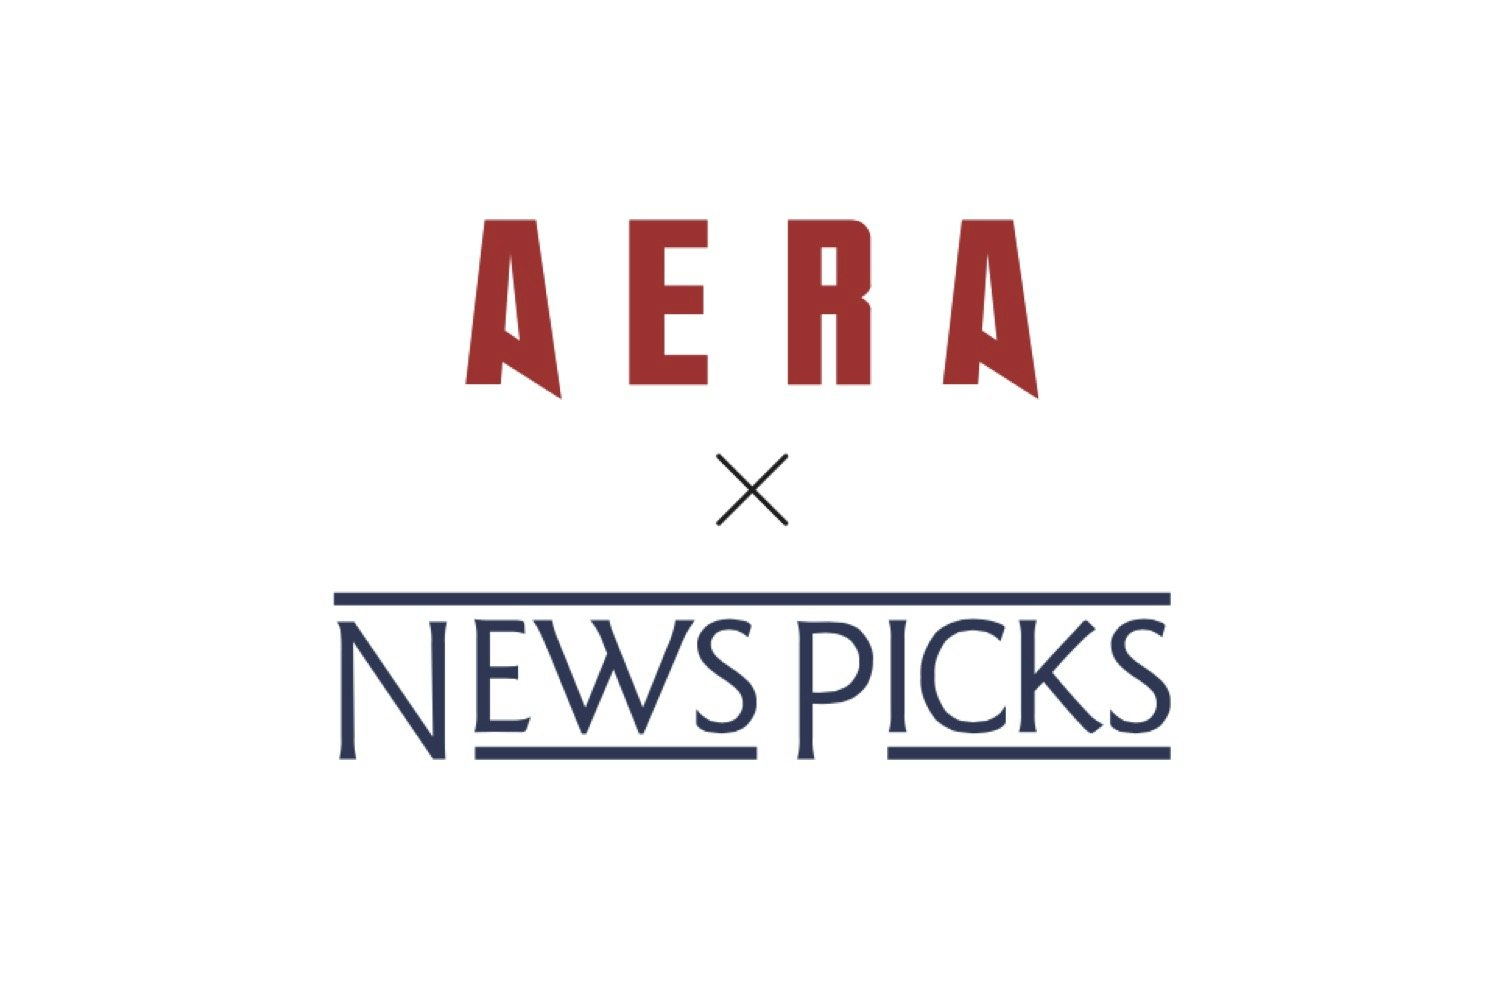 AERAとNewsPicksがコラボレーション